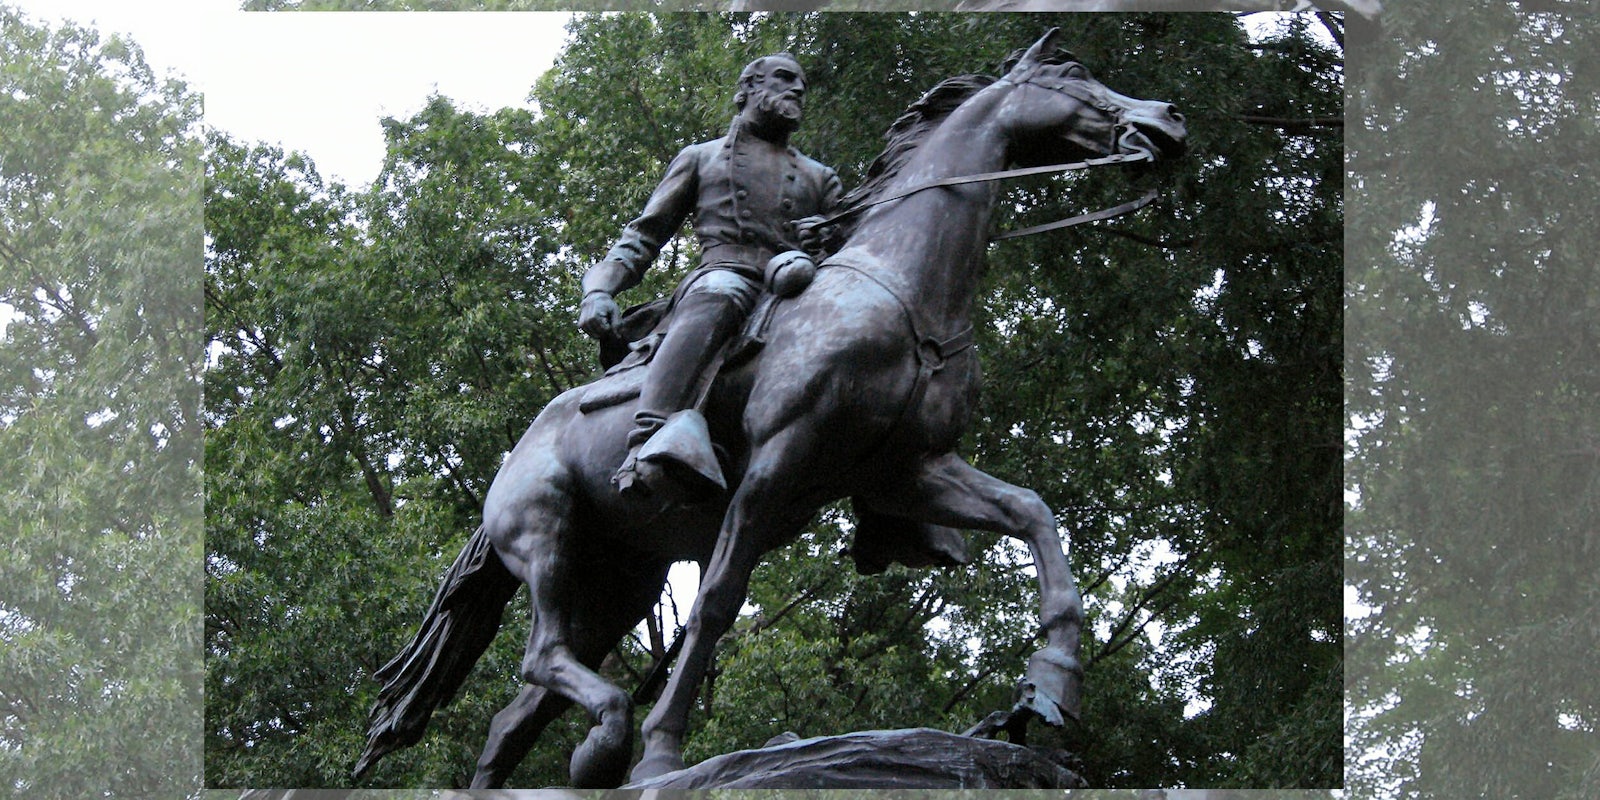 Stonewall Jackson statue in Charlottesville, VA